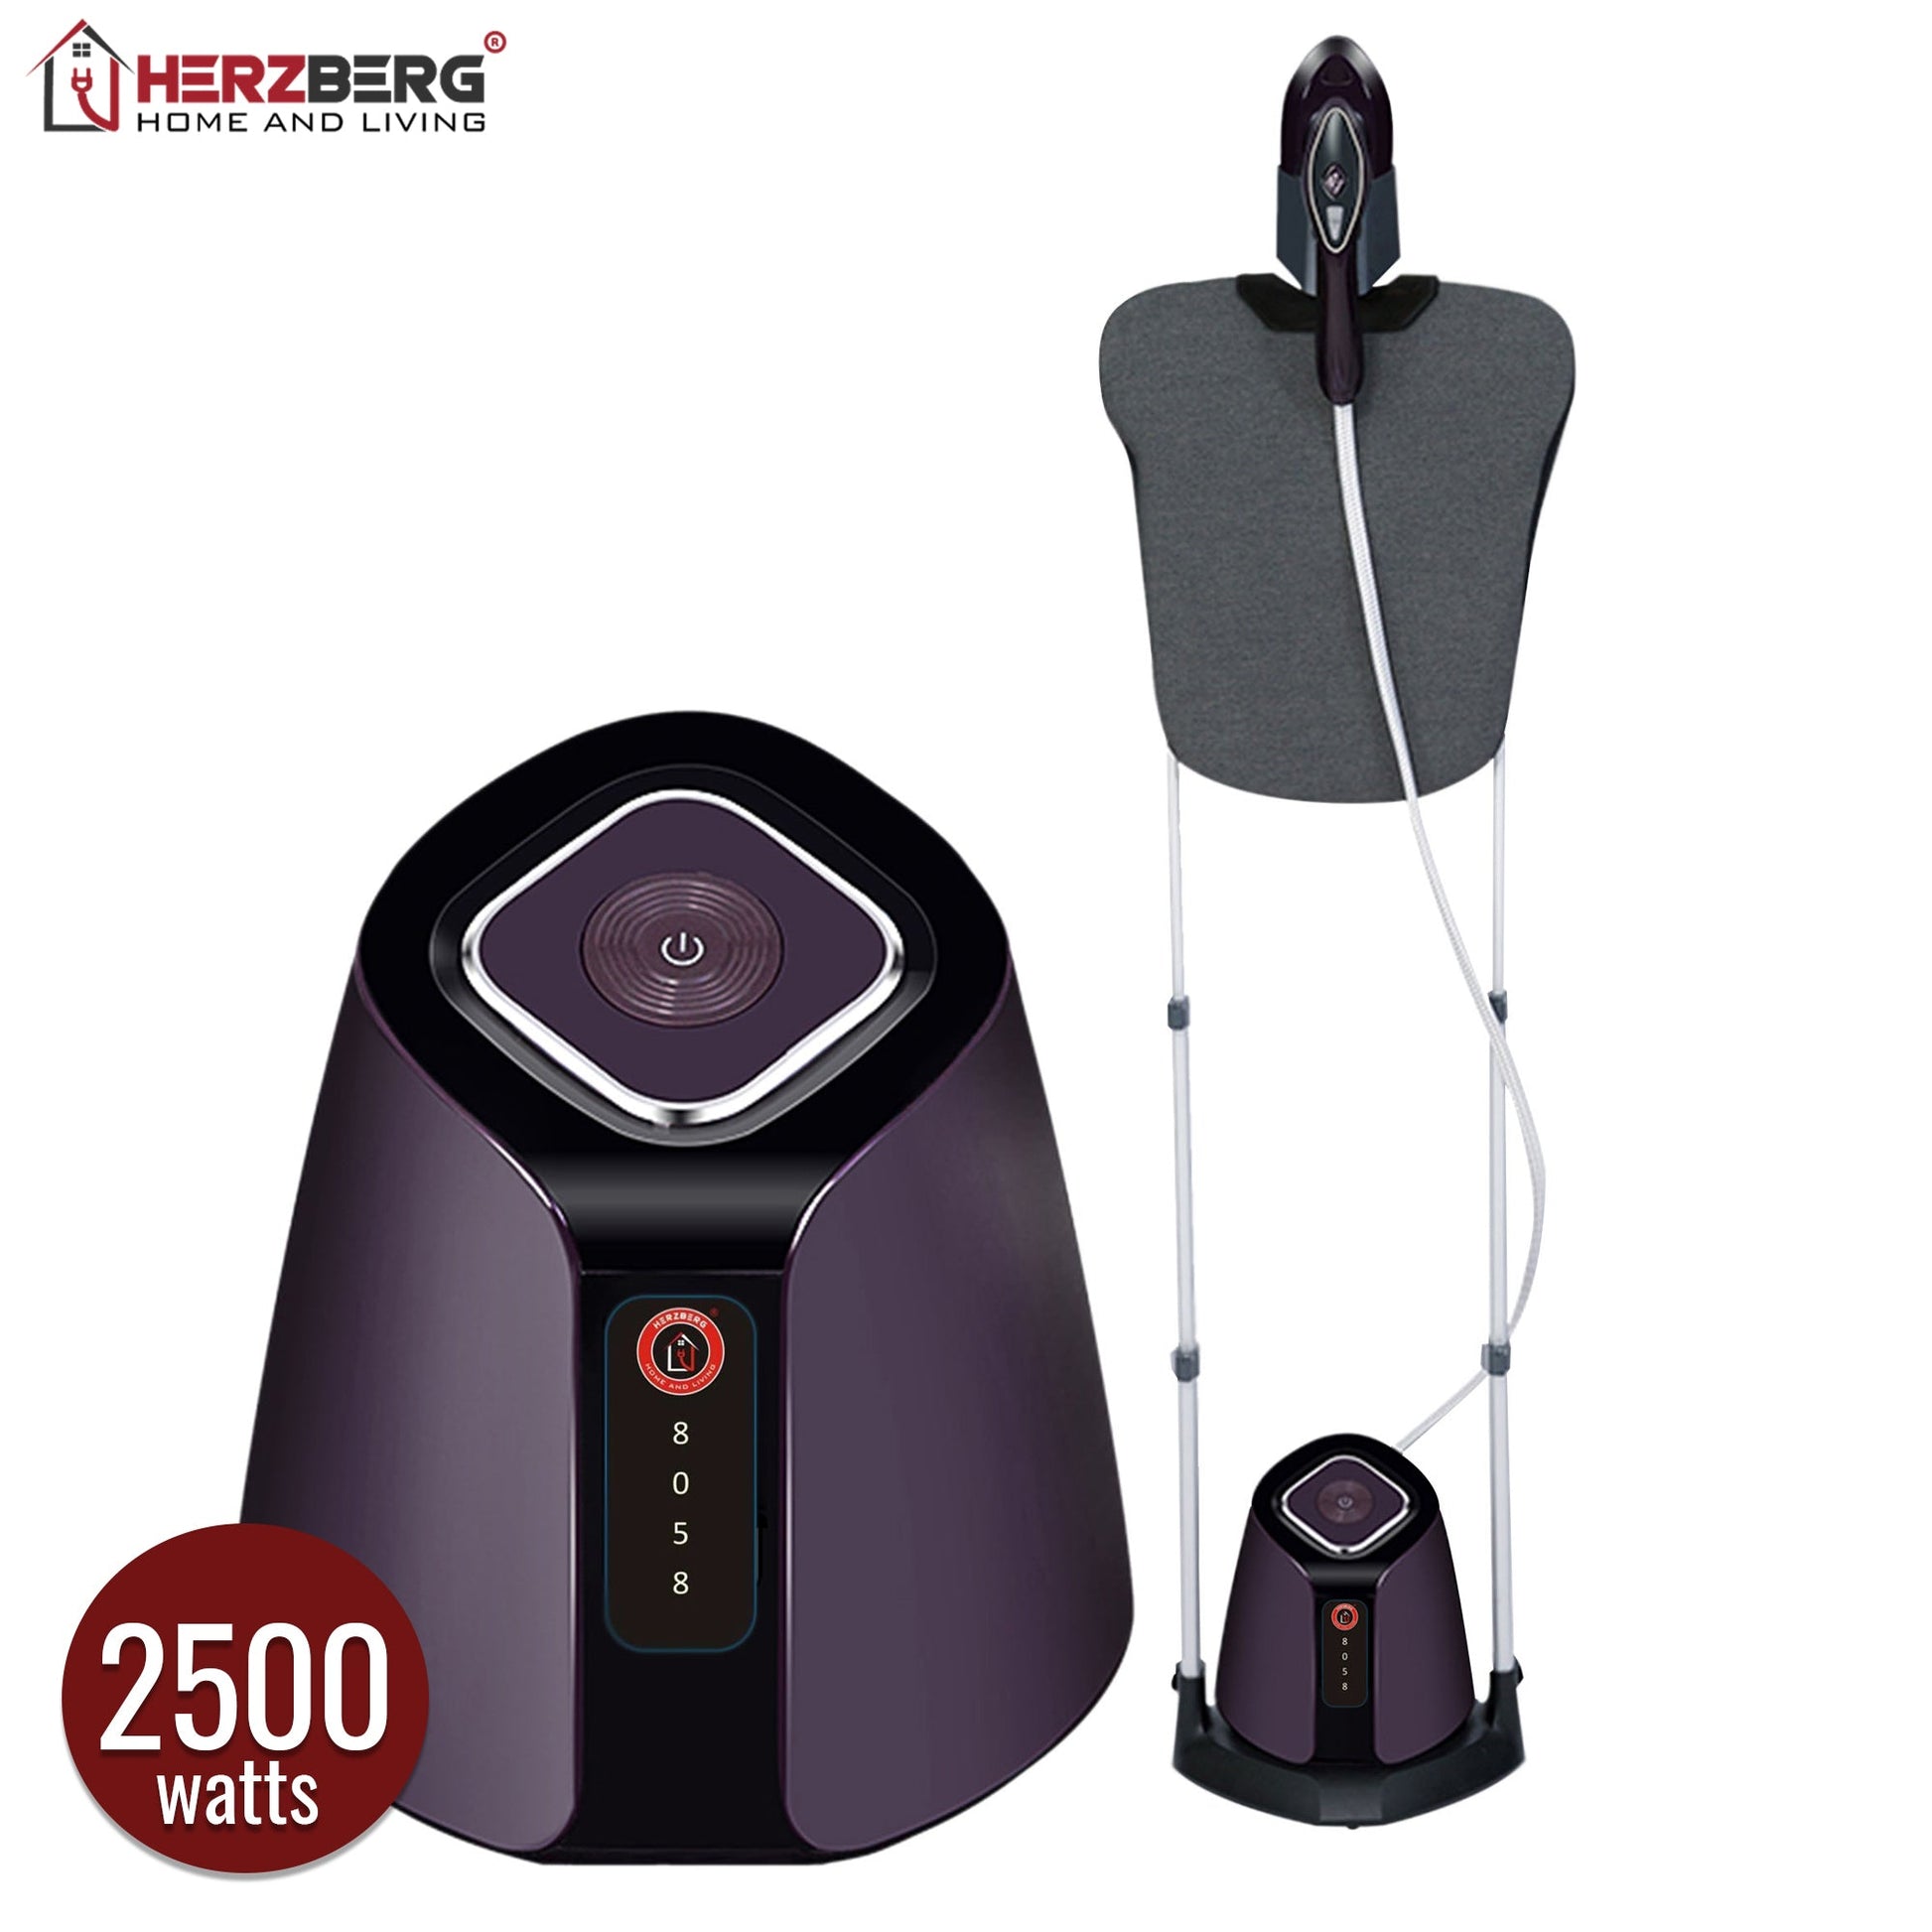 Herzberg HG-8058: geavanceerde kledingstomer met strijkstation - Bivakshop